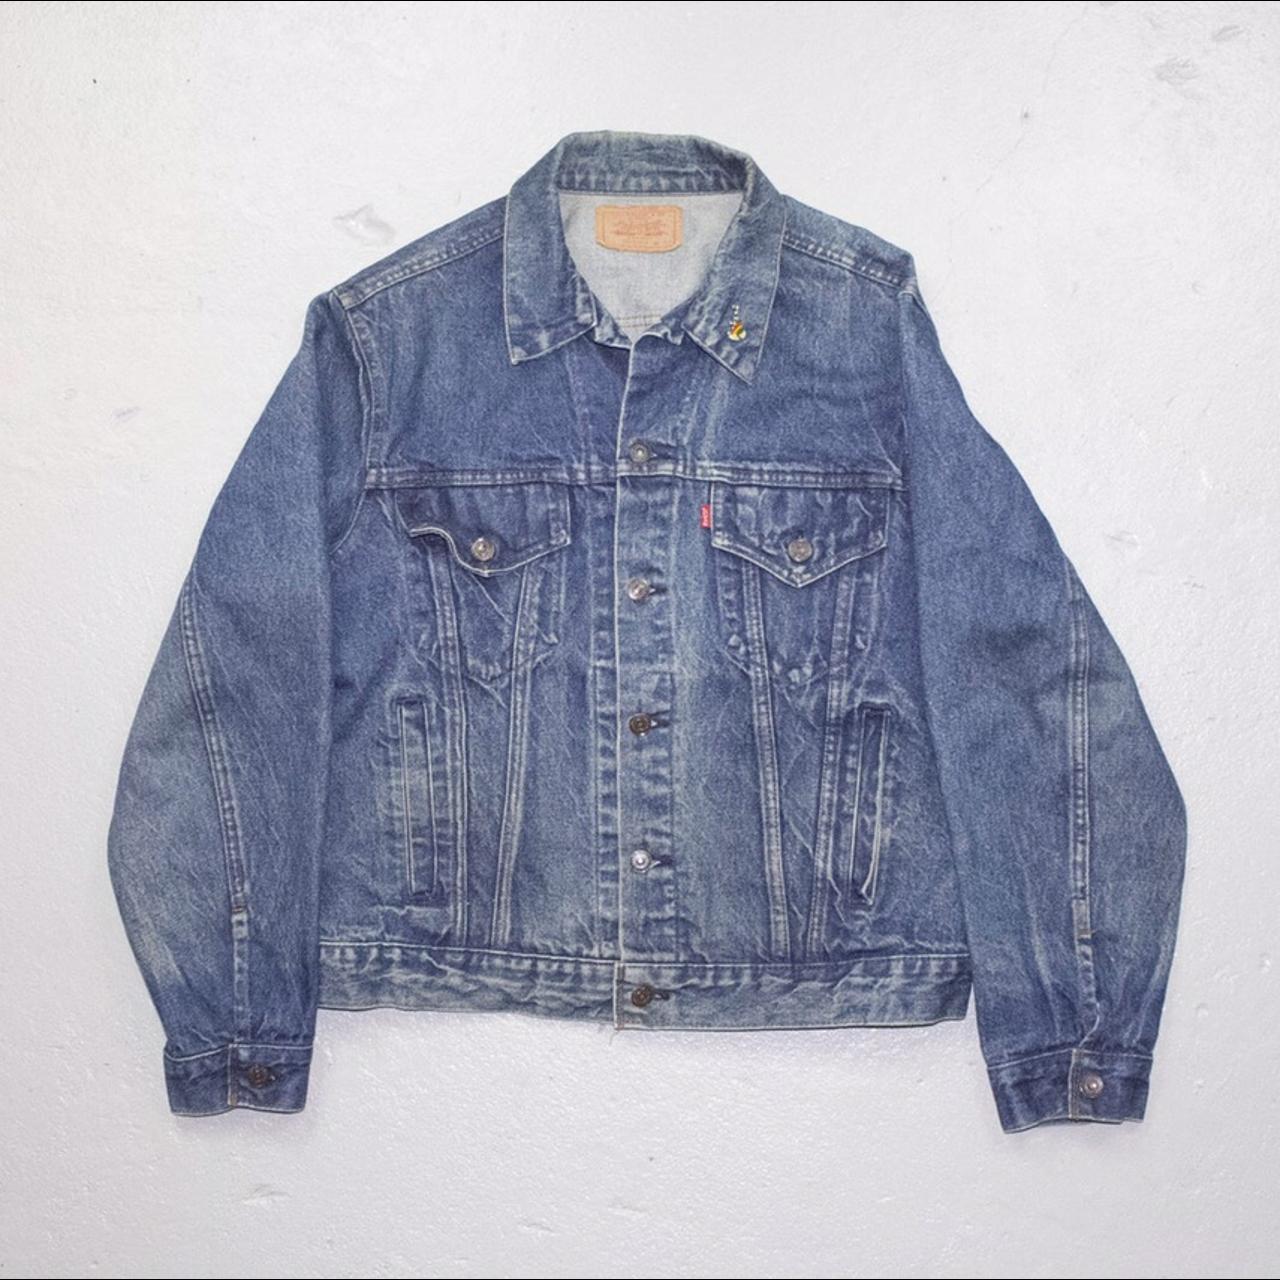 vintage LEVIS made in usa denim jacket - 80s / 90s -... - Depop